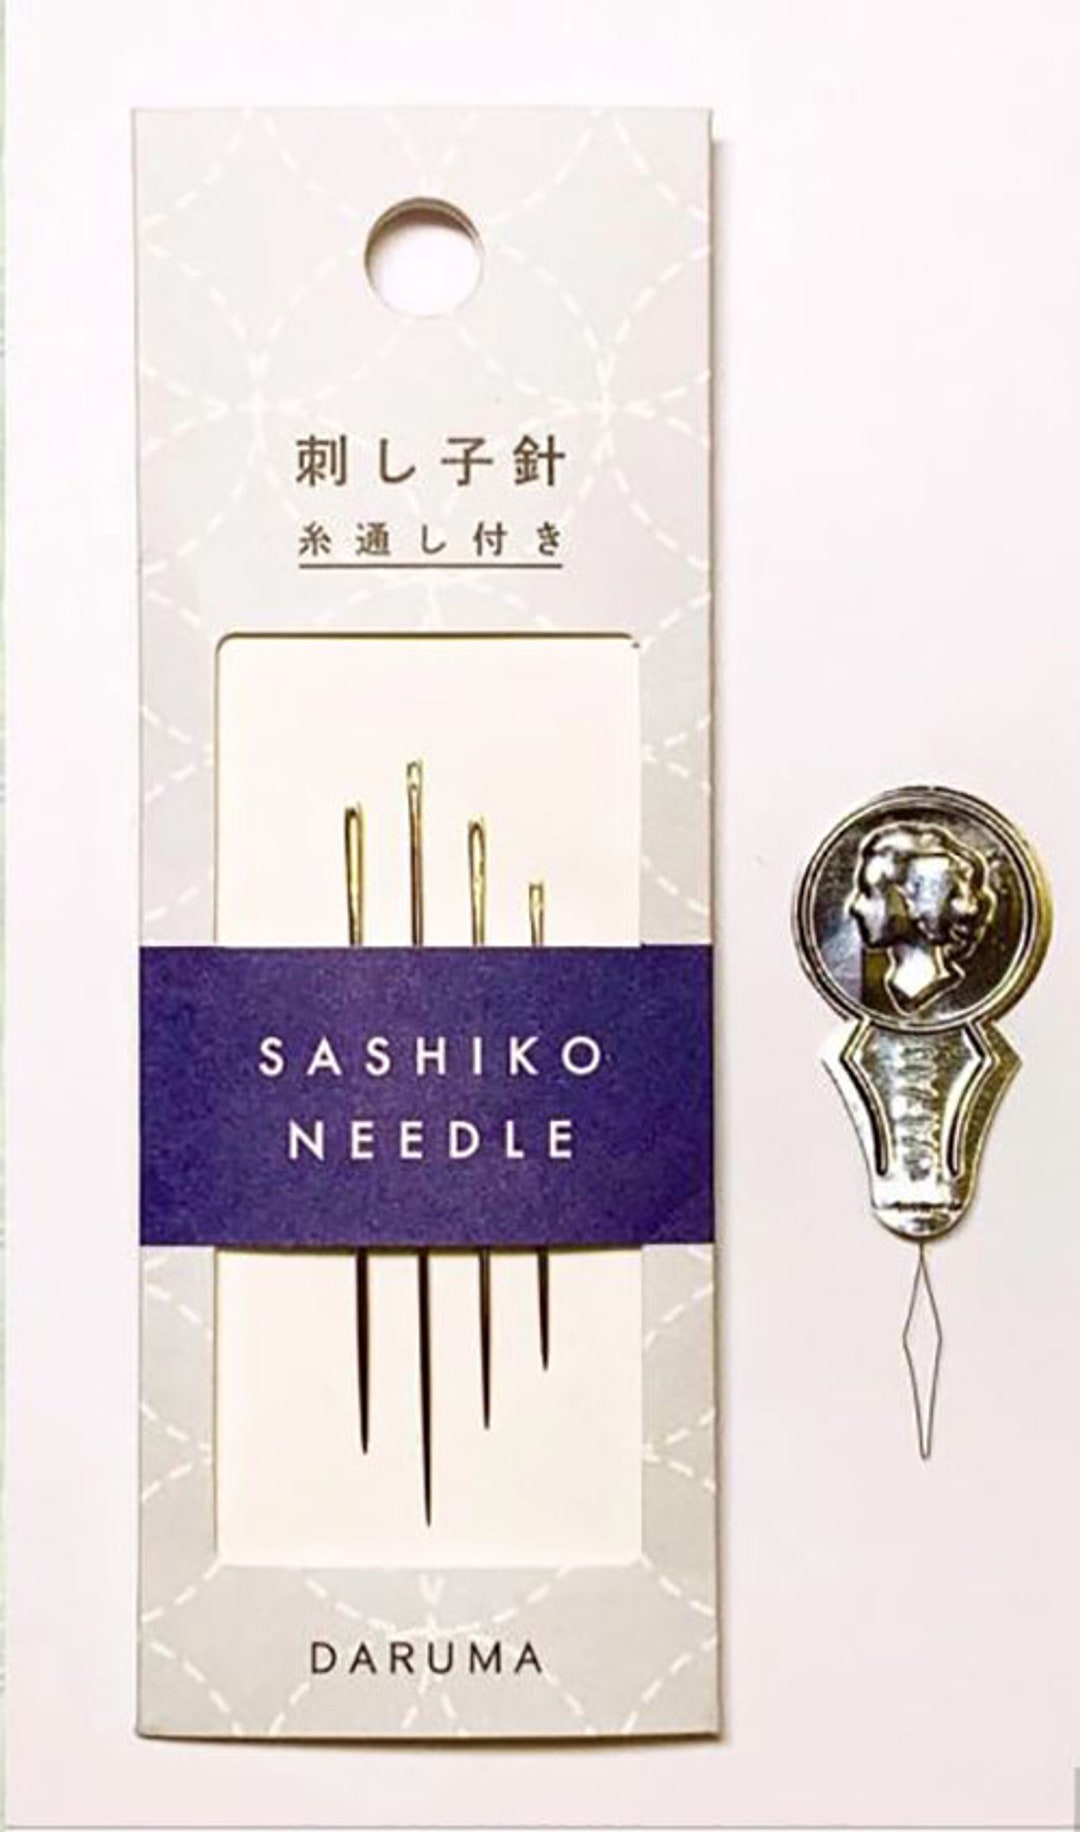 Tulip Sashiko Needles LONG Assortment two each of three sizes THN-030e